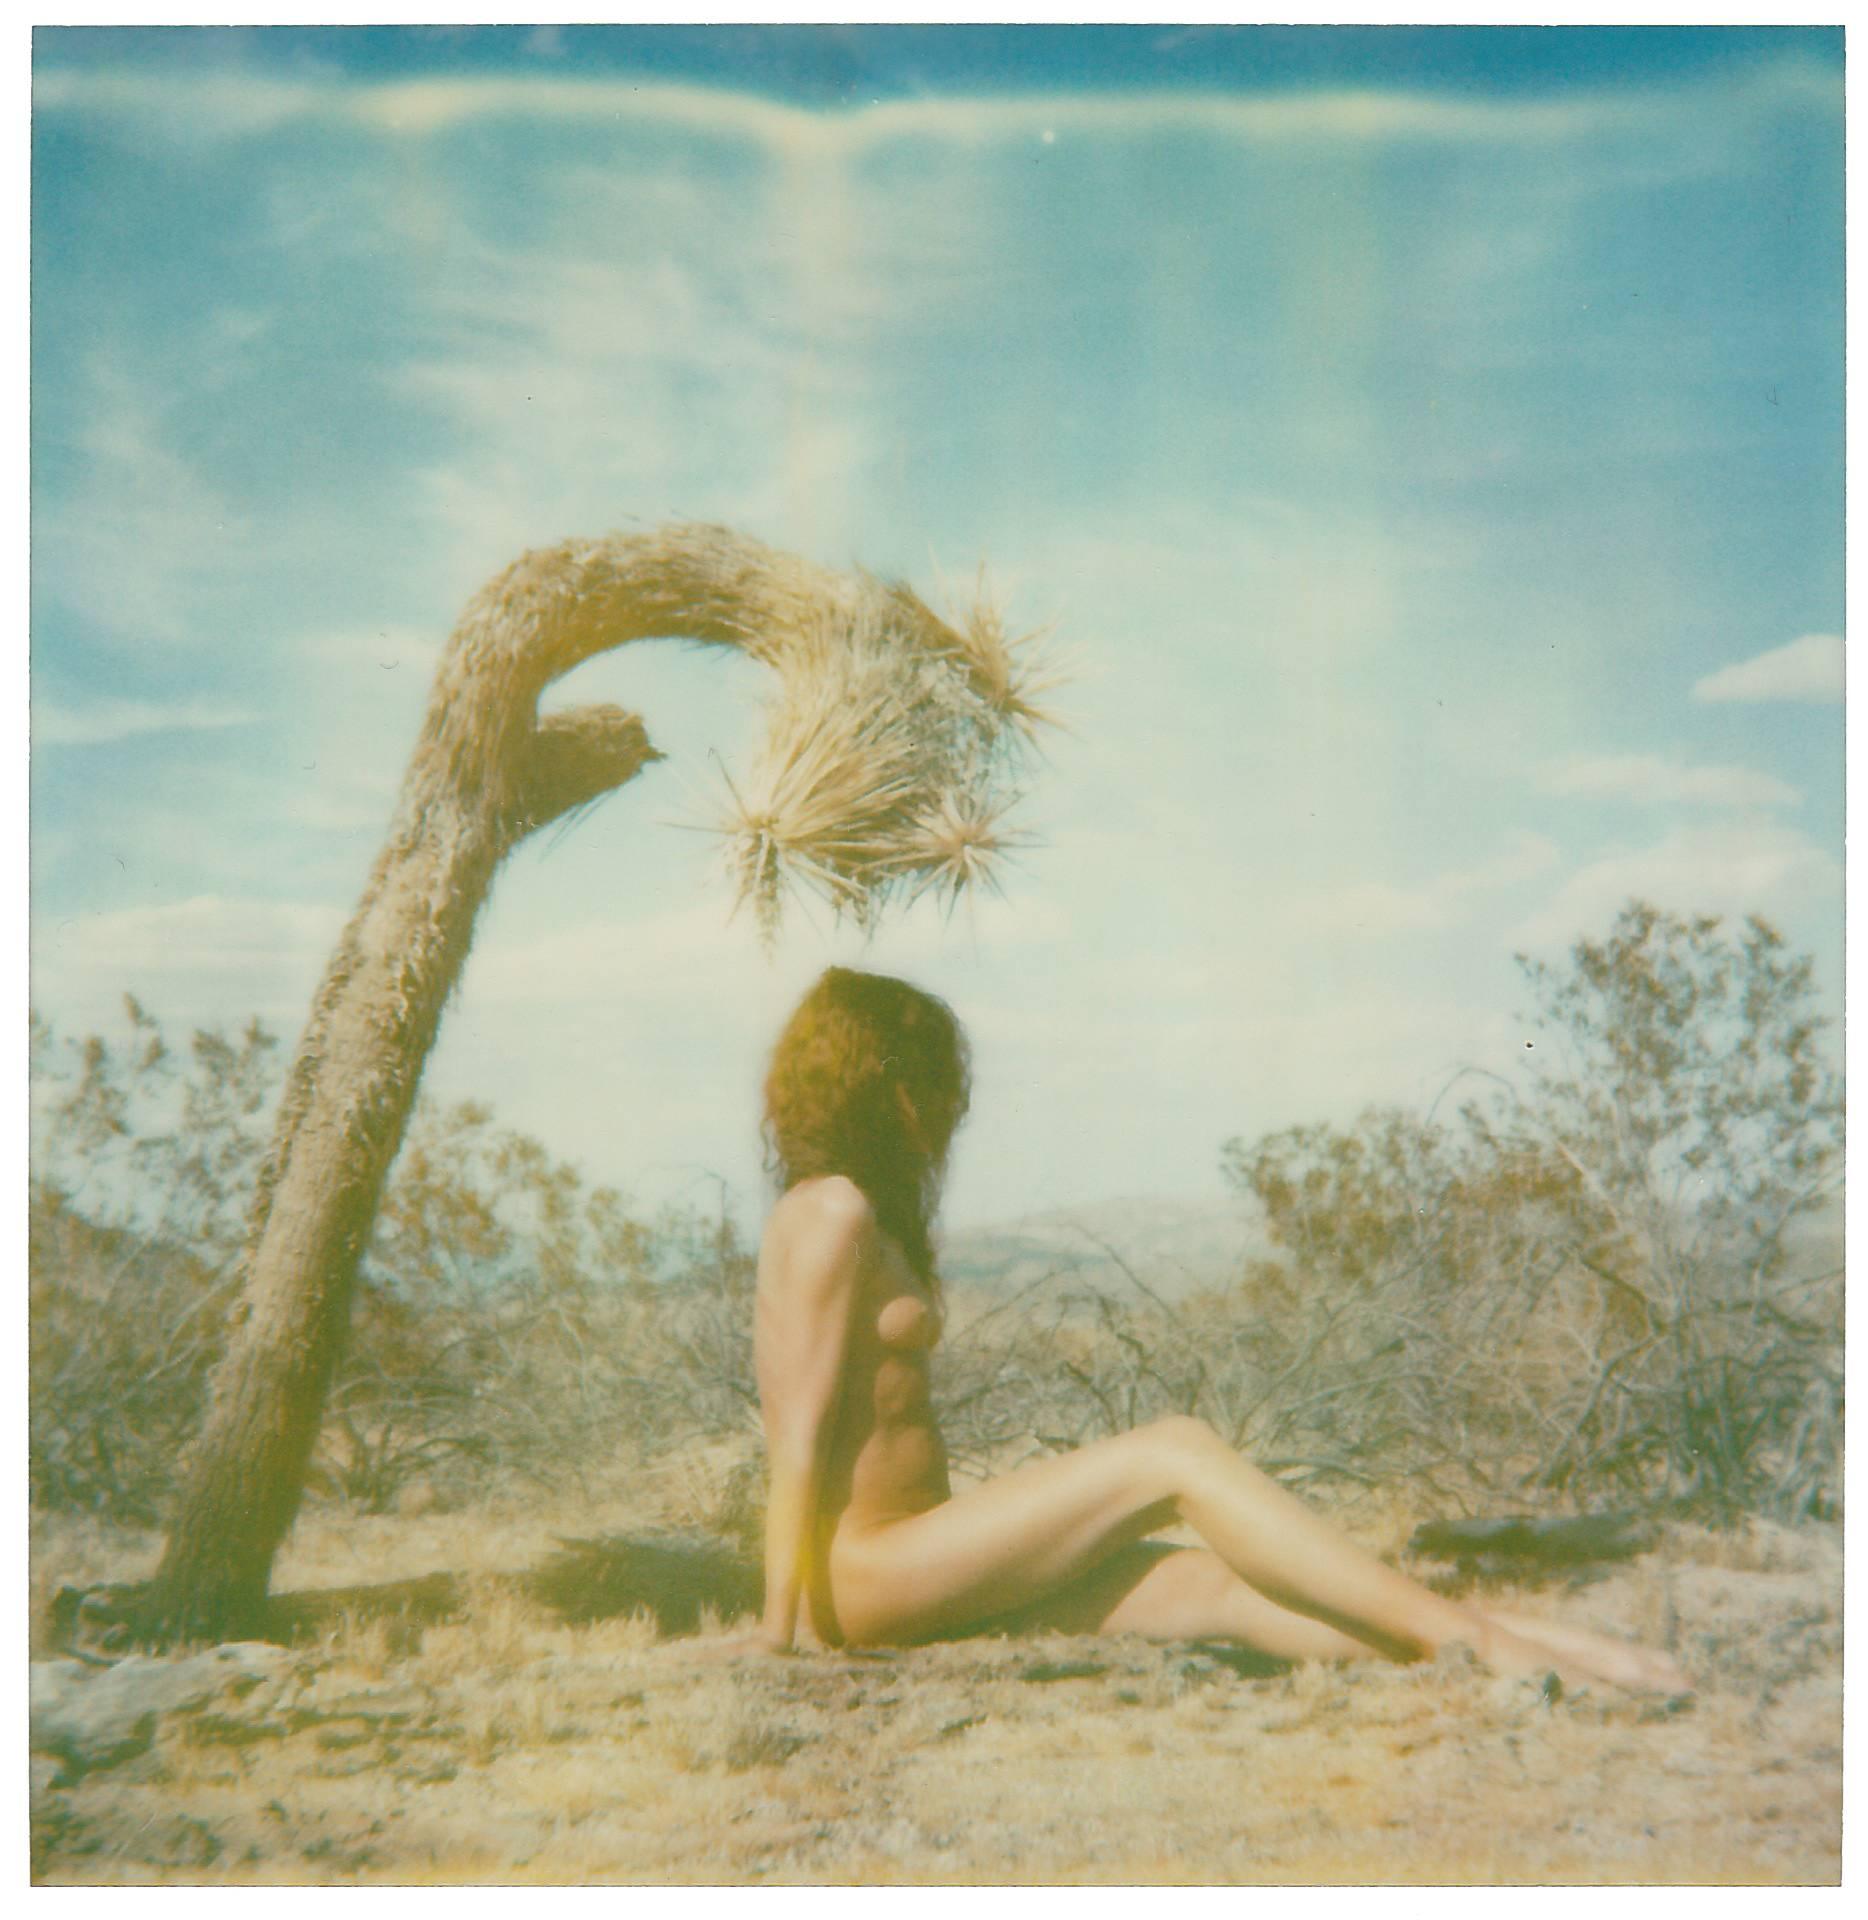 Sven van Driessche Nude Photograph – Joshua-Skulptur aus der Serie Joshua Tales, basiert auf einem Original Polaroid